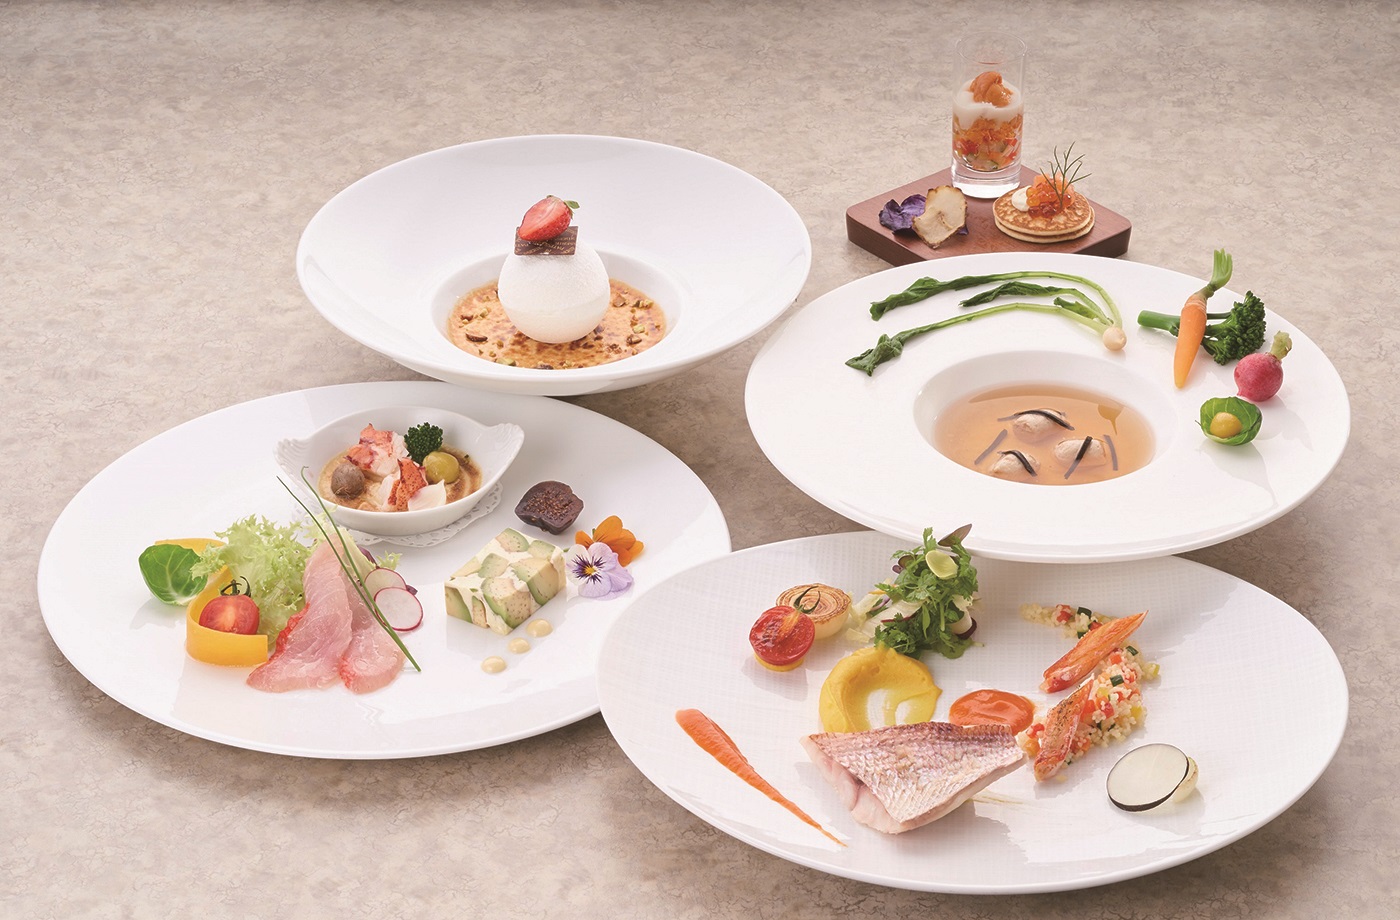 本場仕込のフランス料理が自慢のクラシカルなリゾートホテル♪ 神奈川県 箱根・湯河原への旅！おでかけプラン 夕食「フレンチスペシャルコース」 ツイン